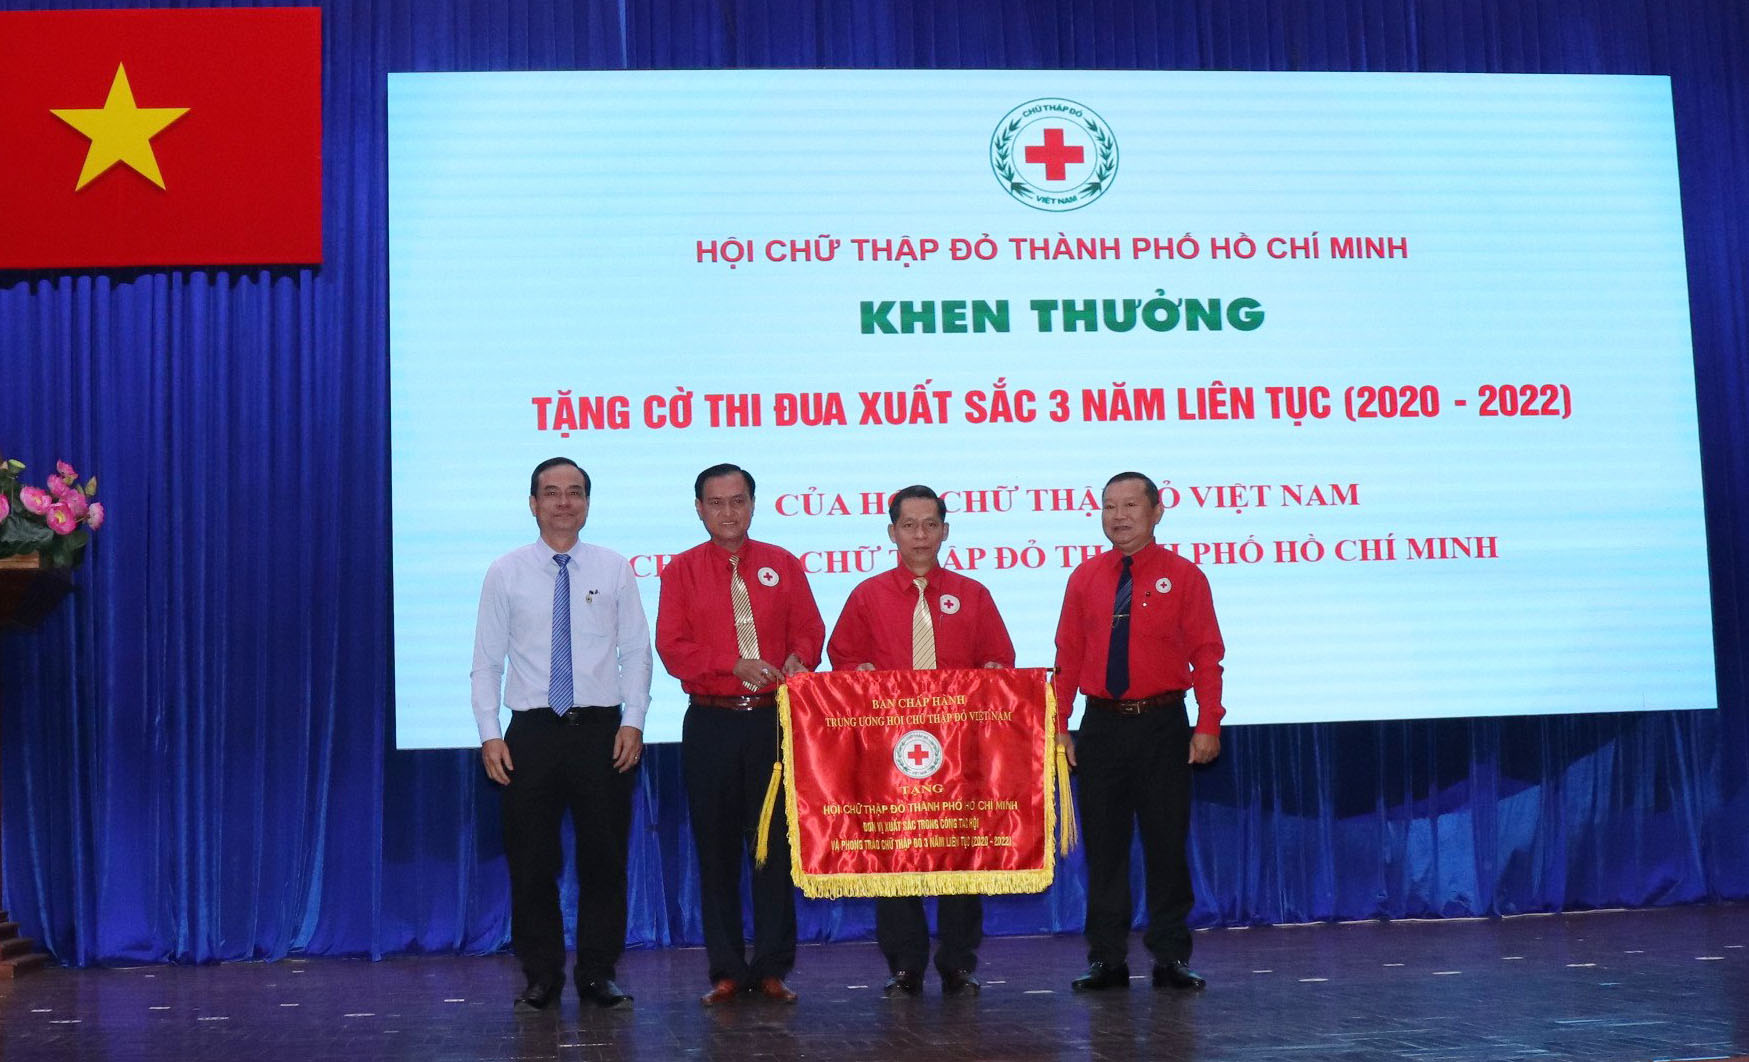 Hội Chữ thập đỏ Thành phố Hồ Chí Minh nhận cờ thi đua Đơn vị xuất sắc 3 năm liên tục (2020-2021-2022)